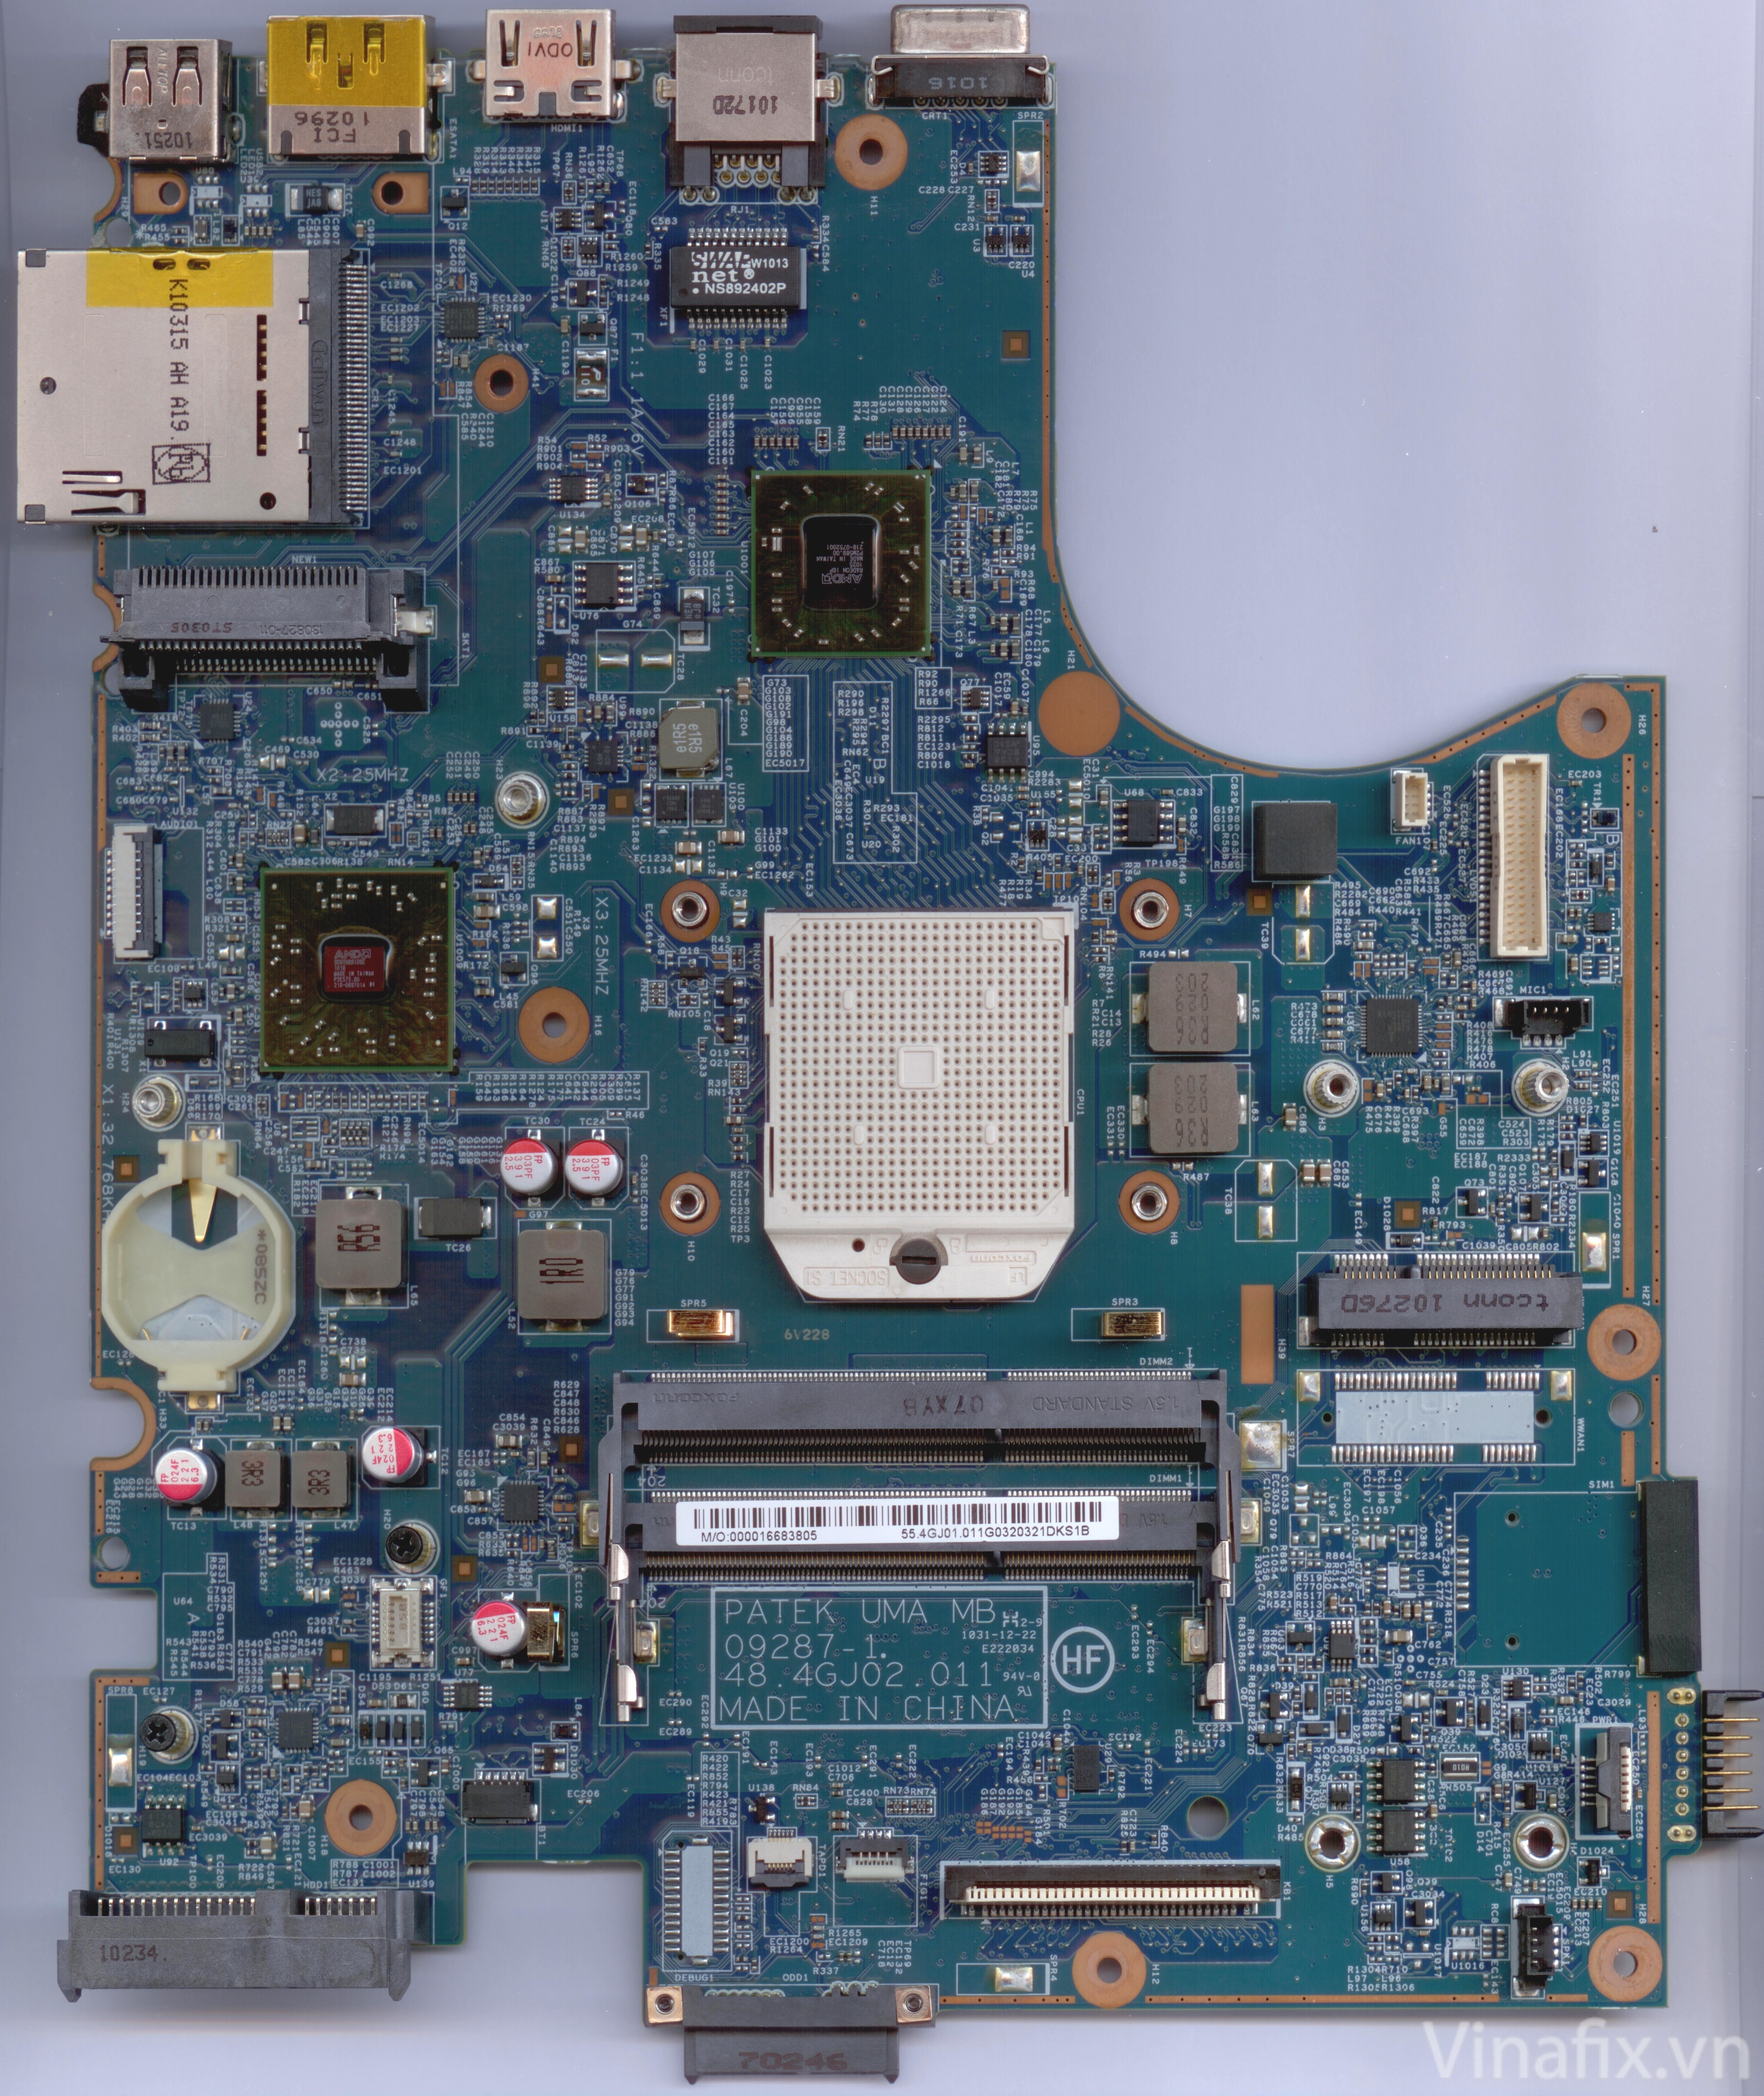 HP ProBook 4525s PATEK UMA MB 09287-1.48.4GJ02.011 | Vinafix.com